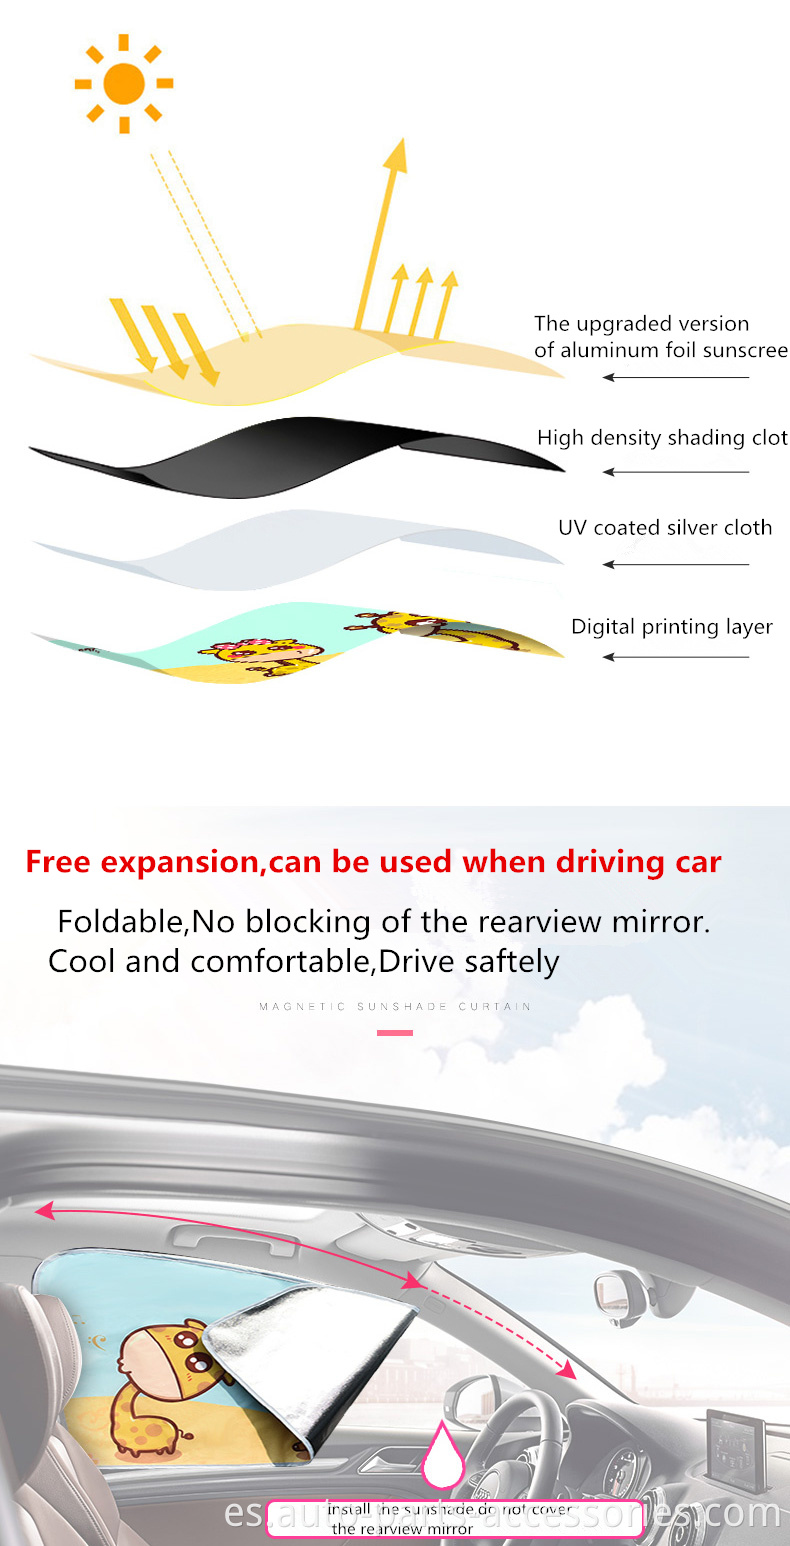 Colorida impresión digital PE FUMA PE Cubierta UV Logotipo personalizado Cortina de automóvil magnético Sunshade